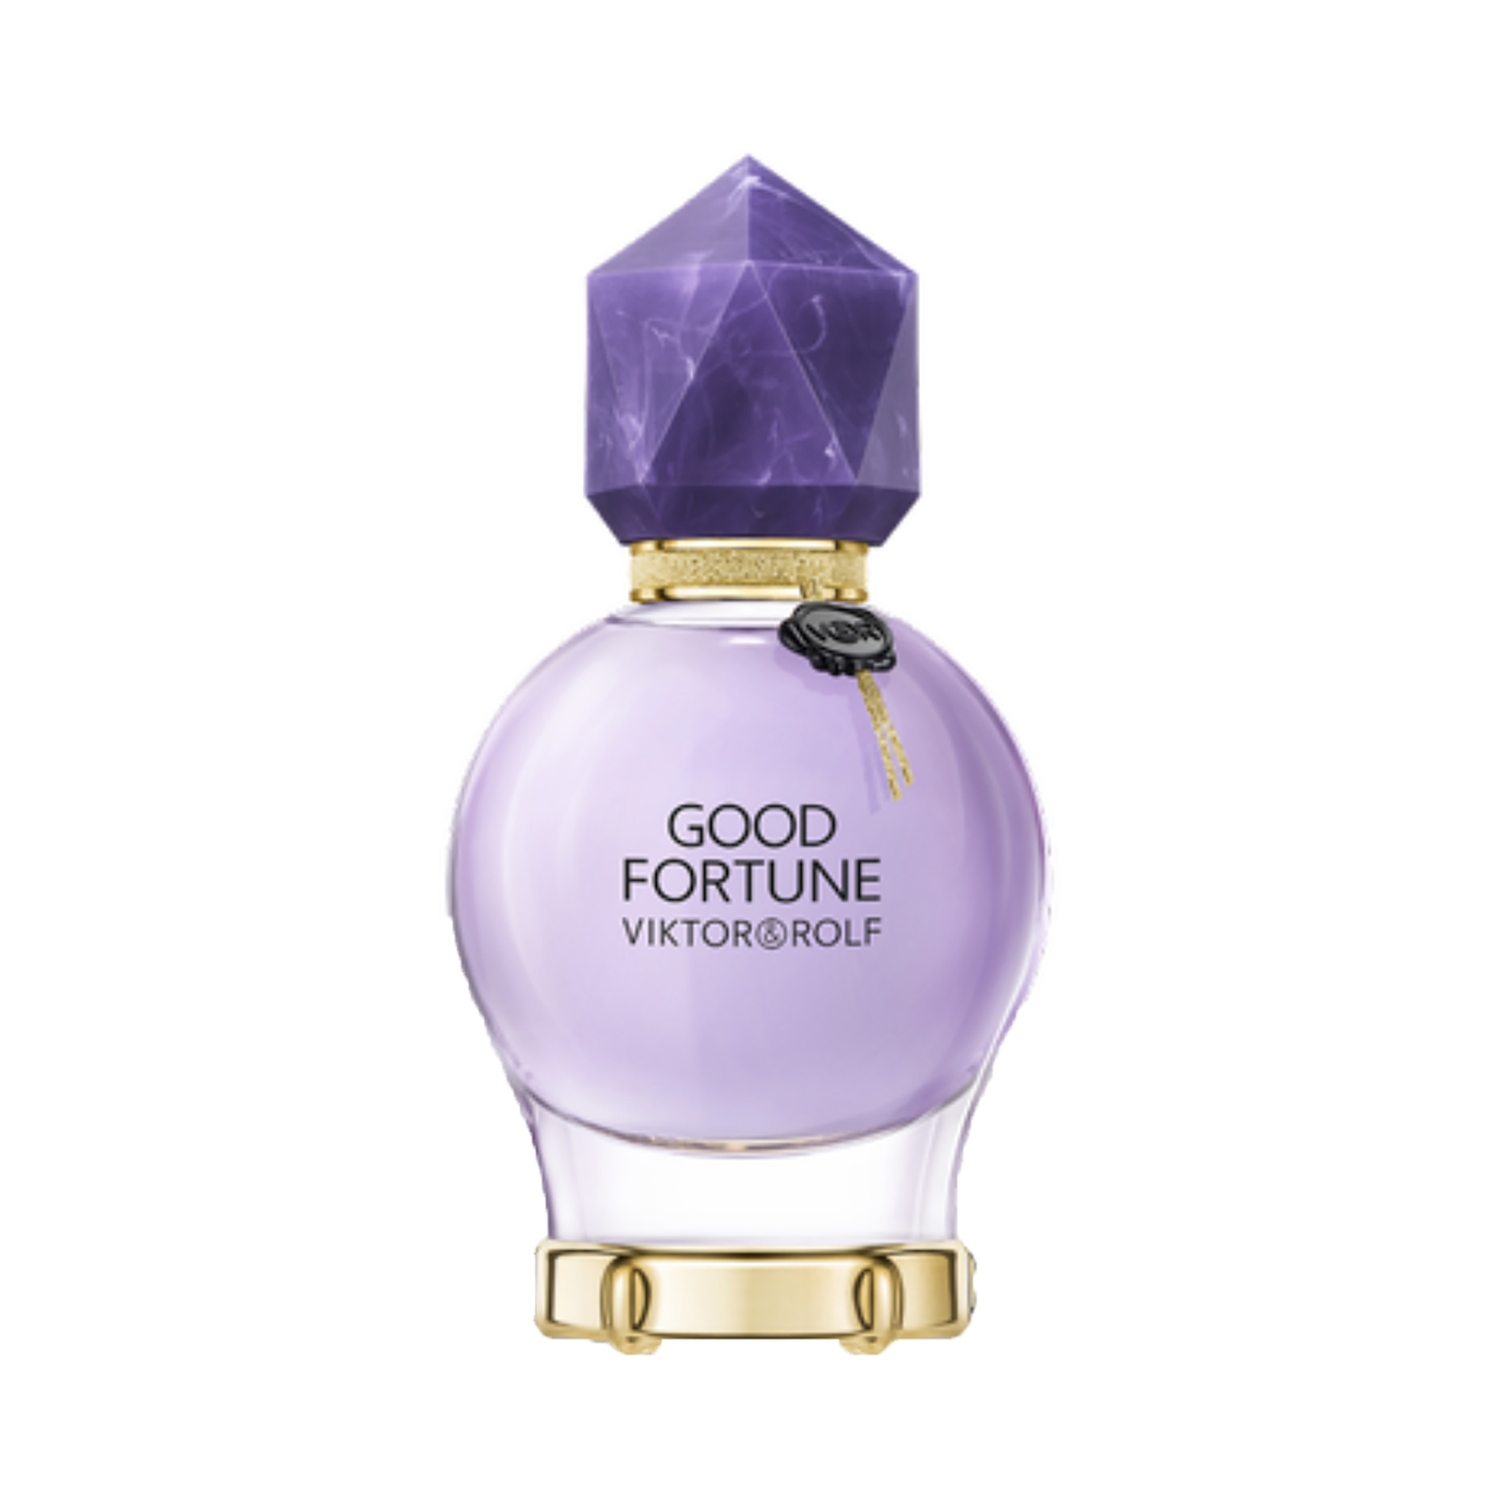 Viktor & Rolf | Viktor & Rolf Good Fortune Eau De Parfum (50ml)